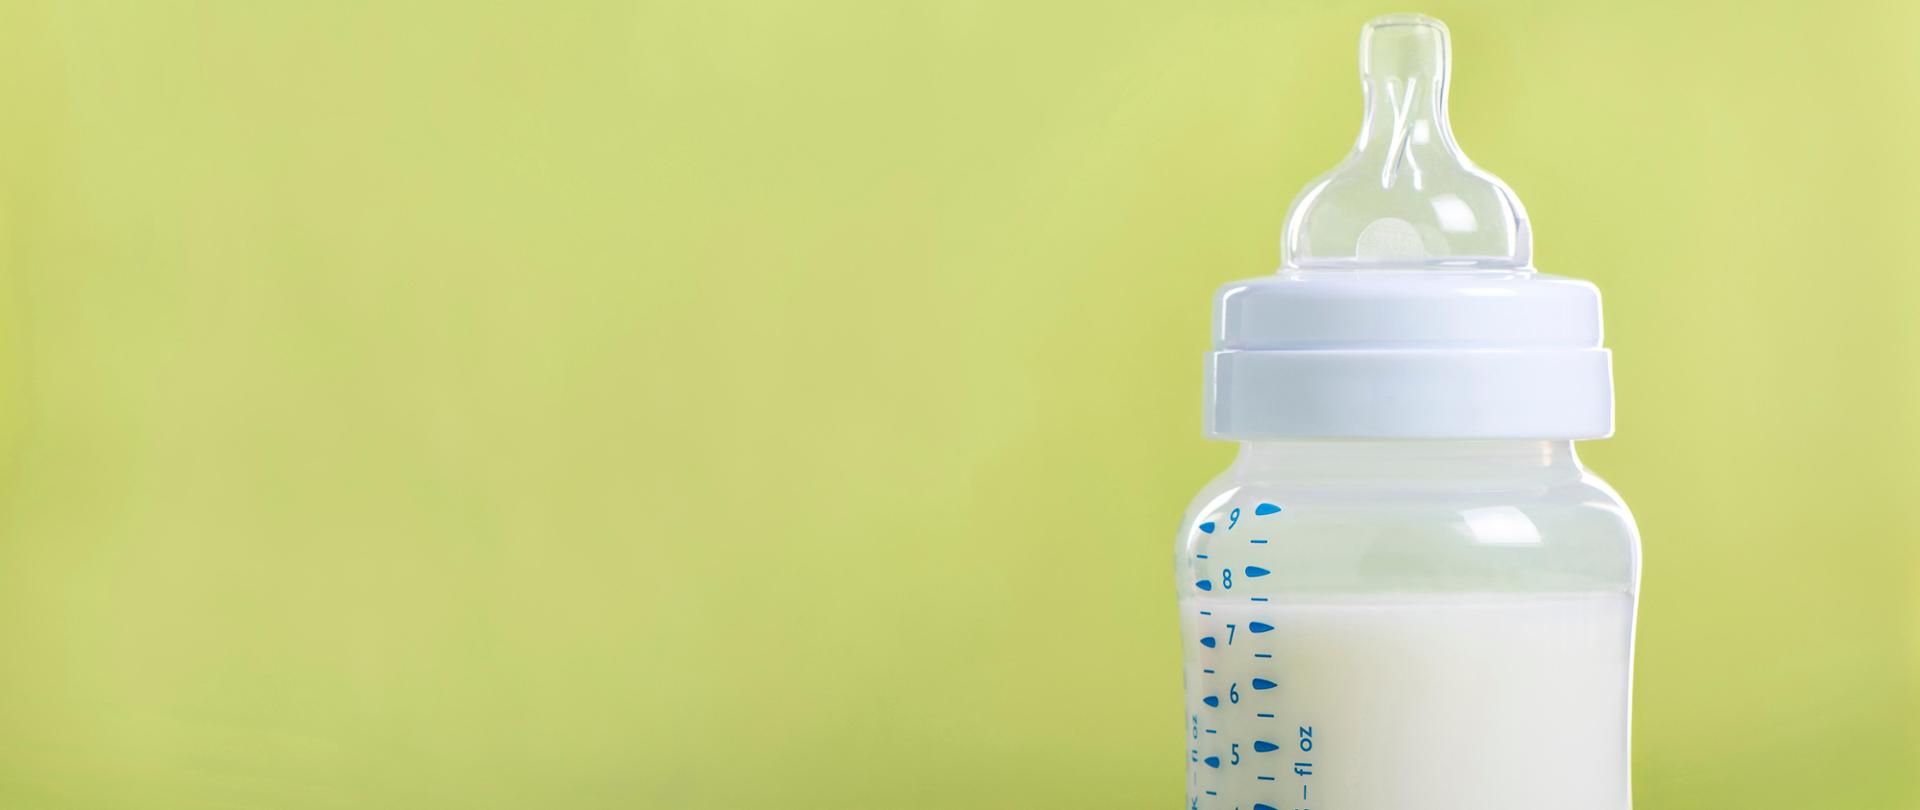 Baby milk bottle on a green sheet